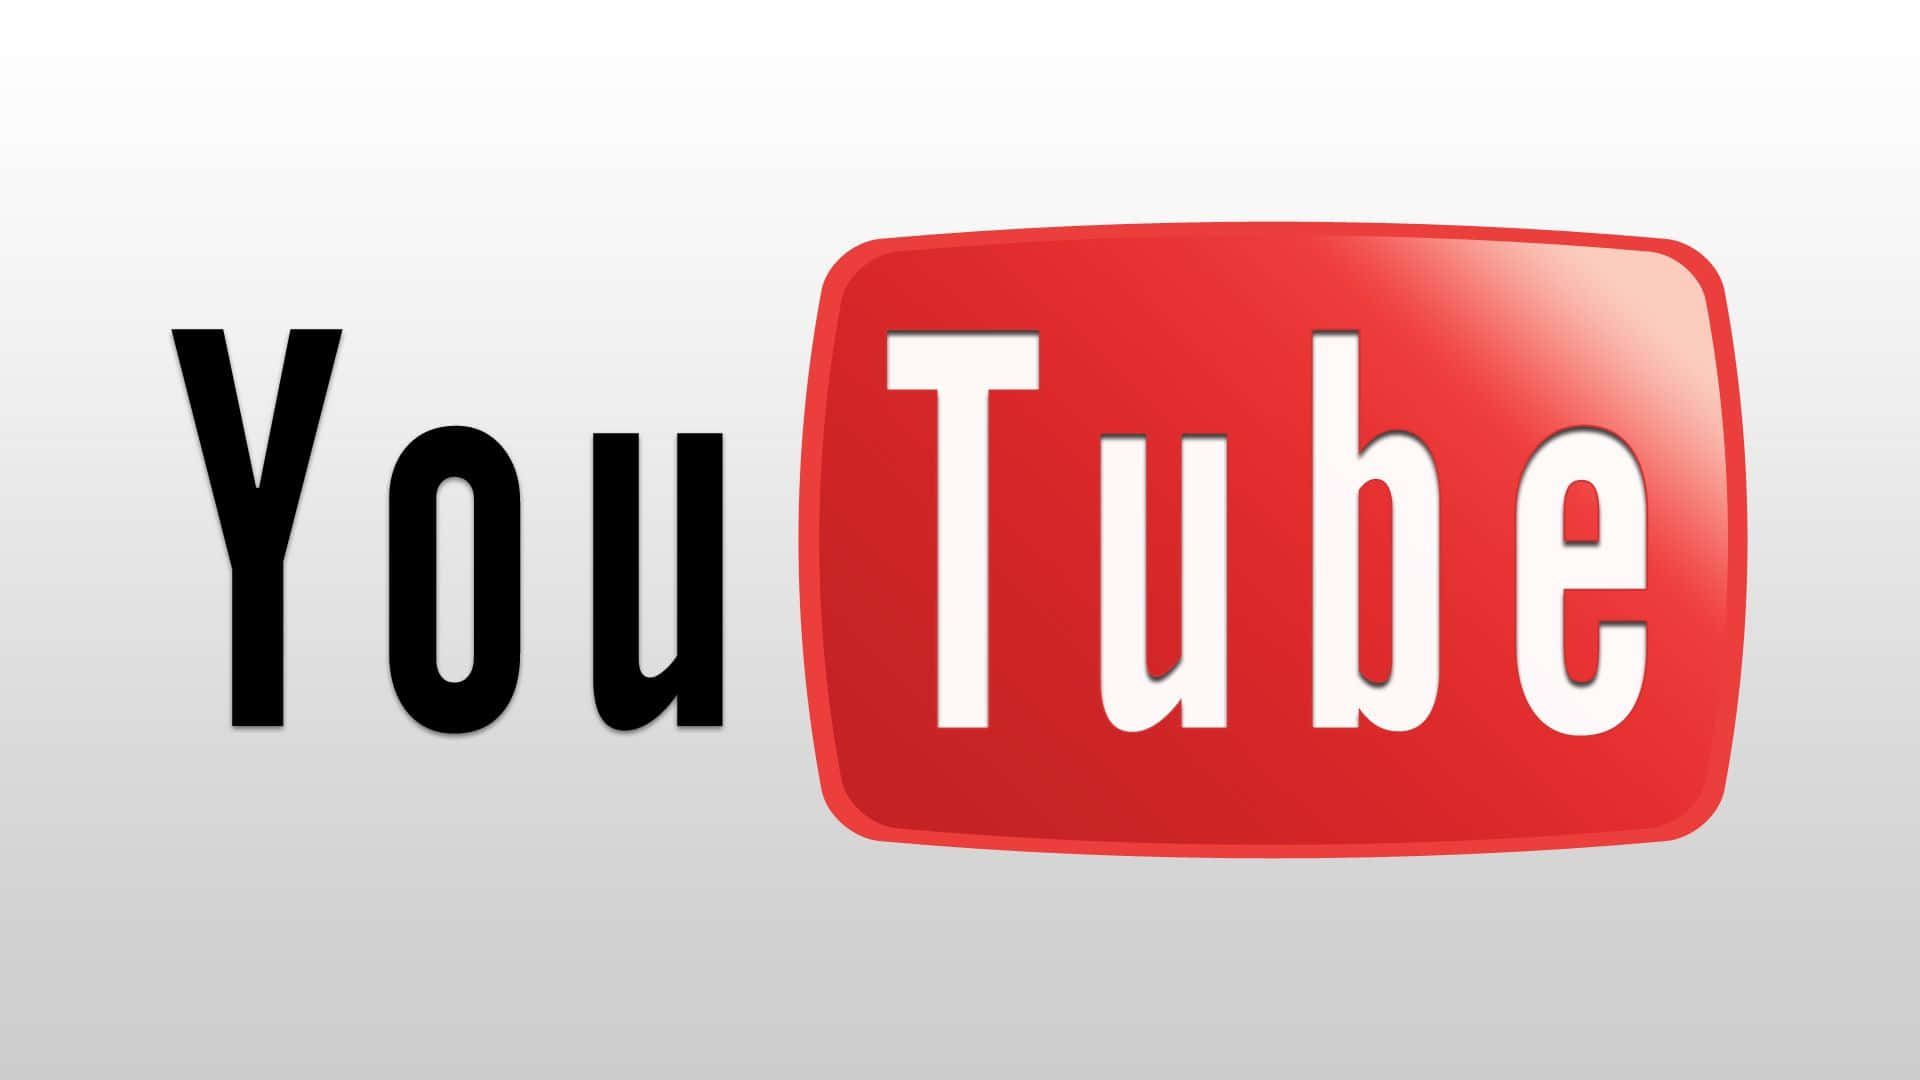 Logodi Youtube Con Sfondo Rosso